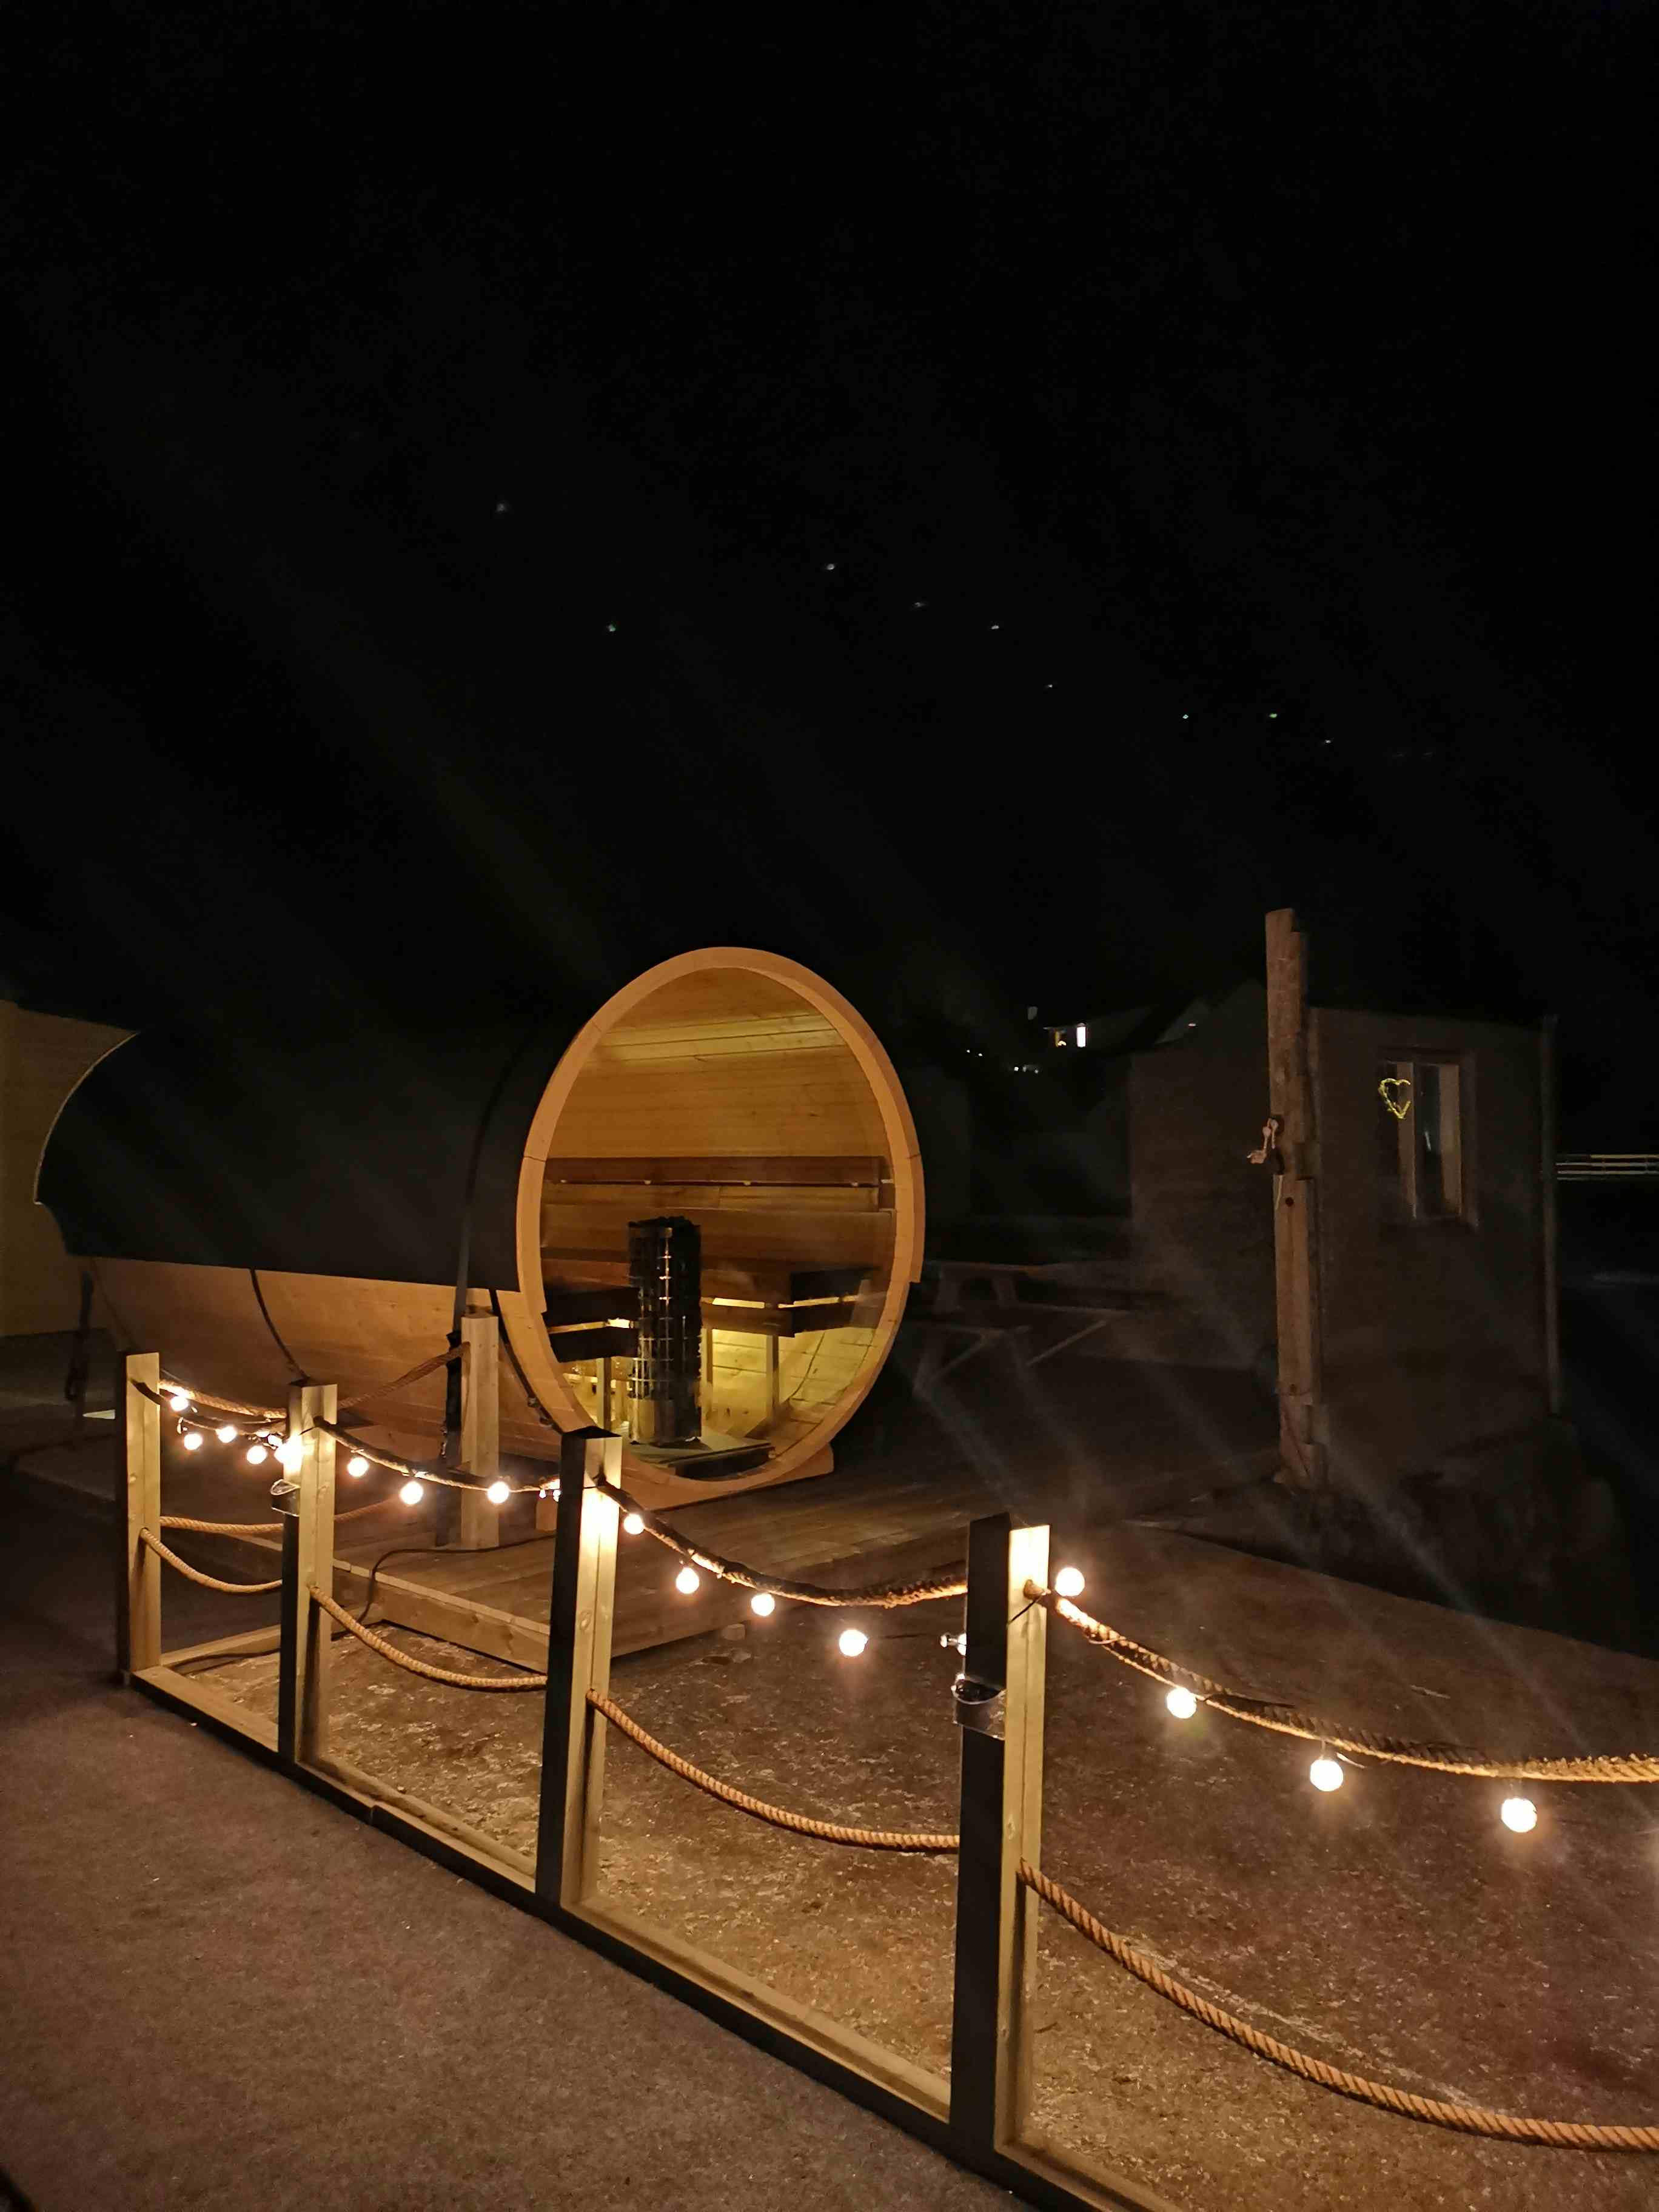 sauna, fire personer sitter inne i en tønne. det er mørkt ute, og måneskinn